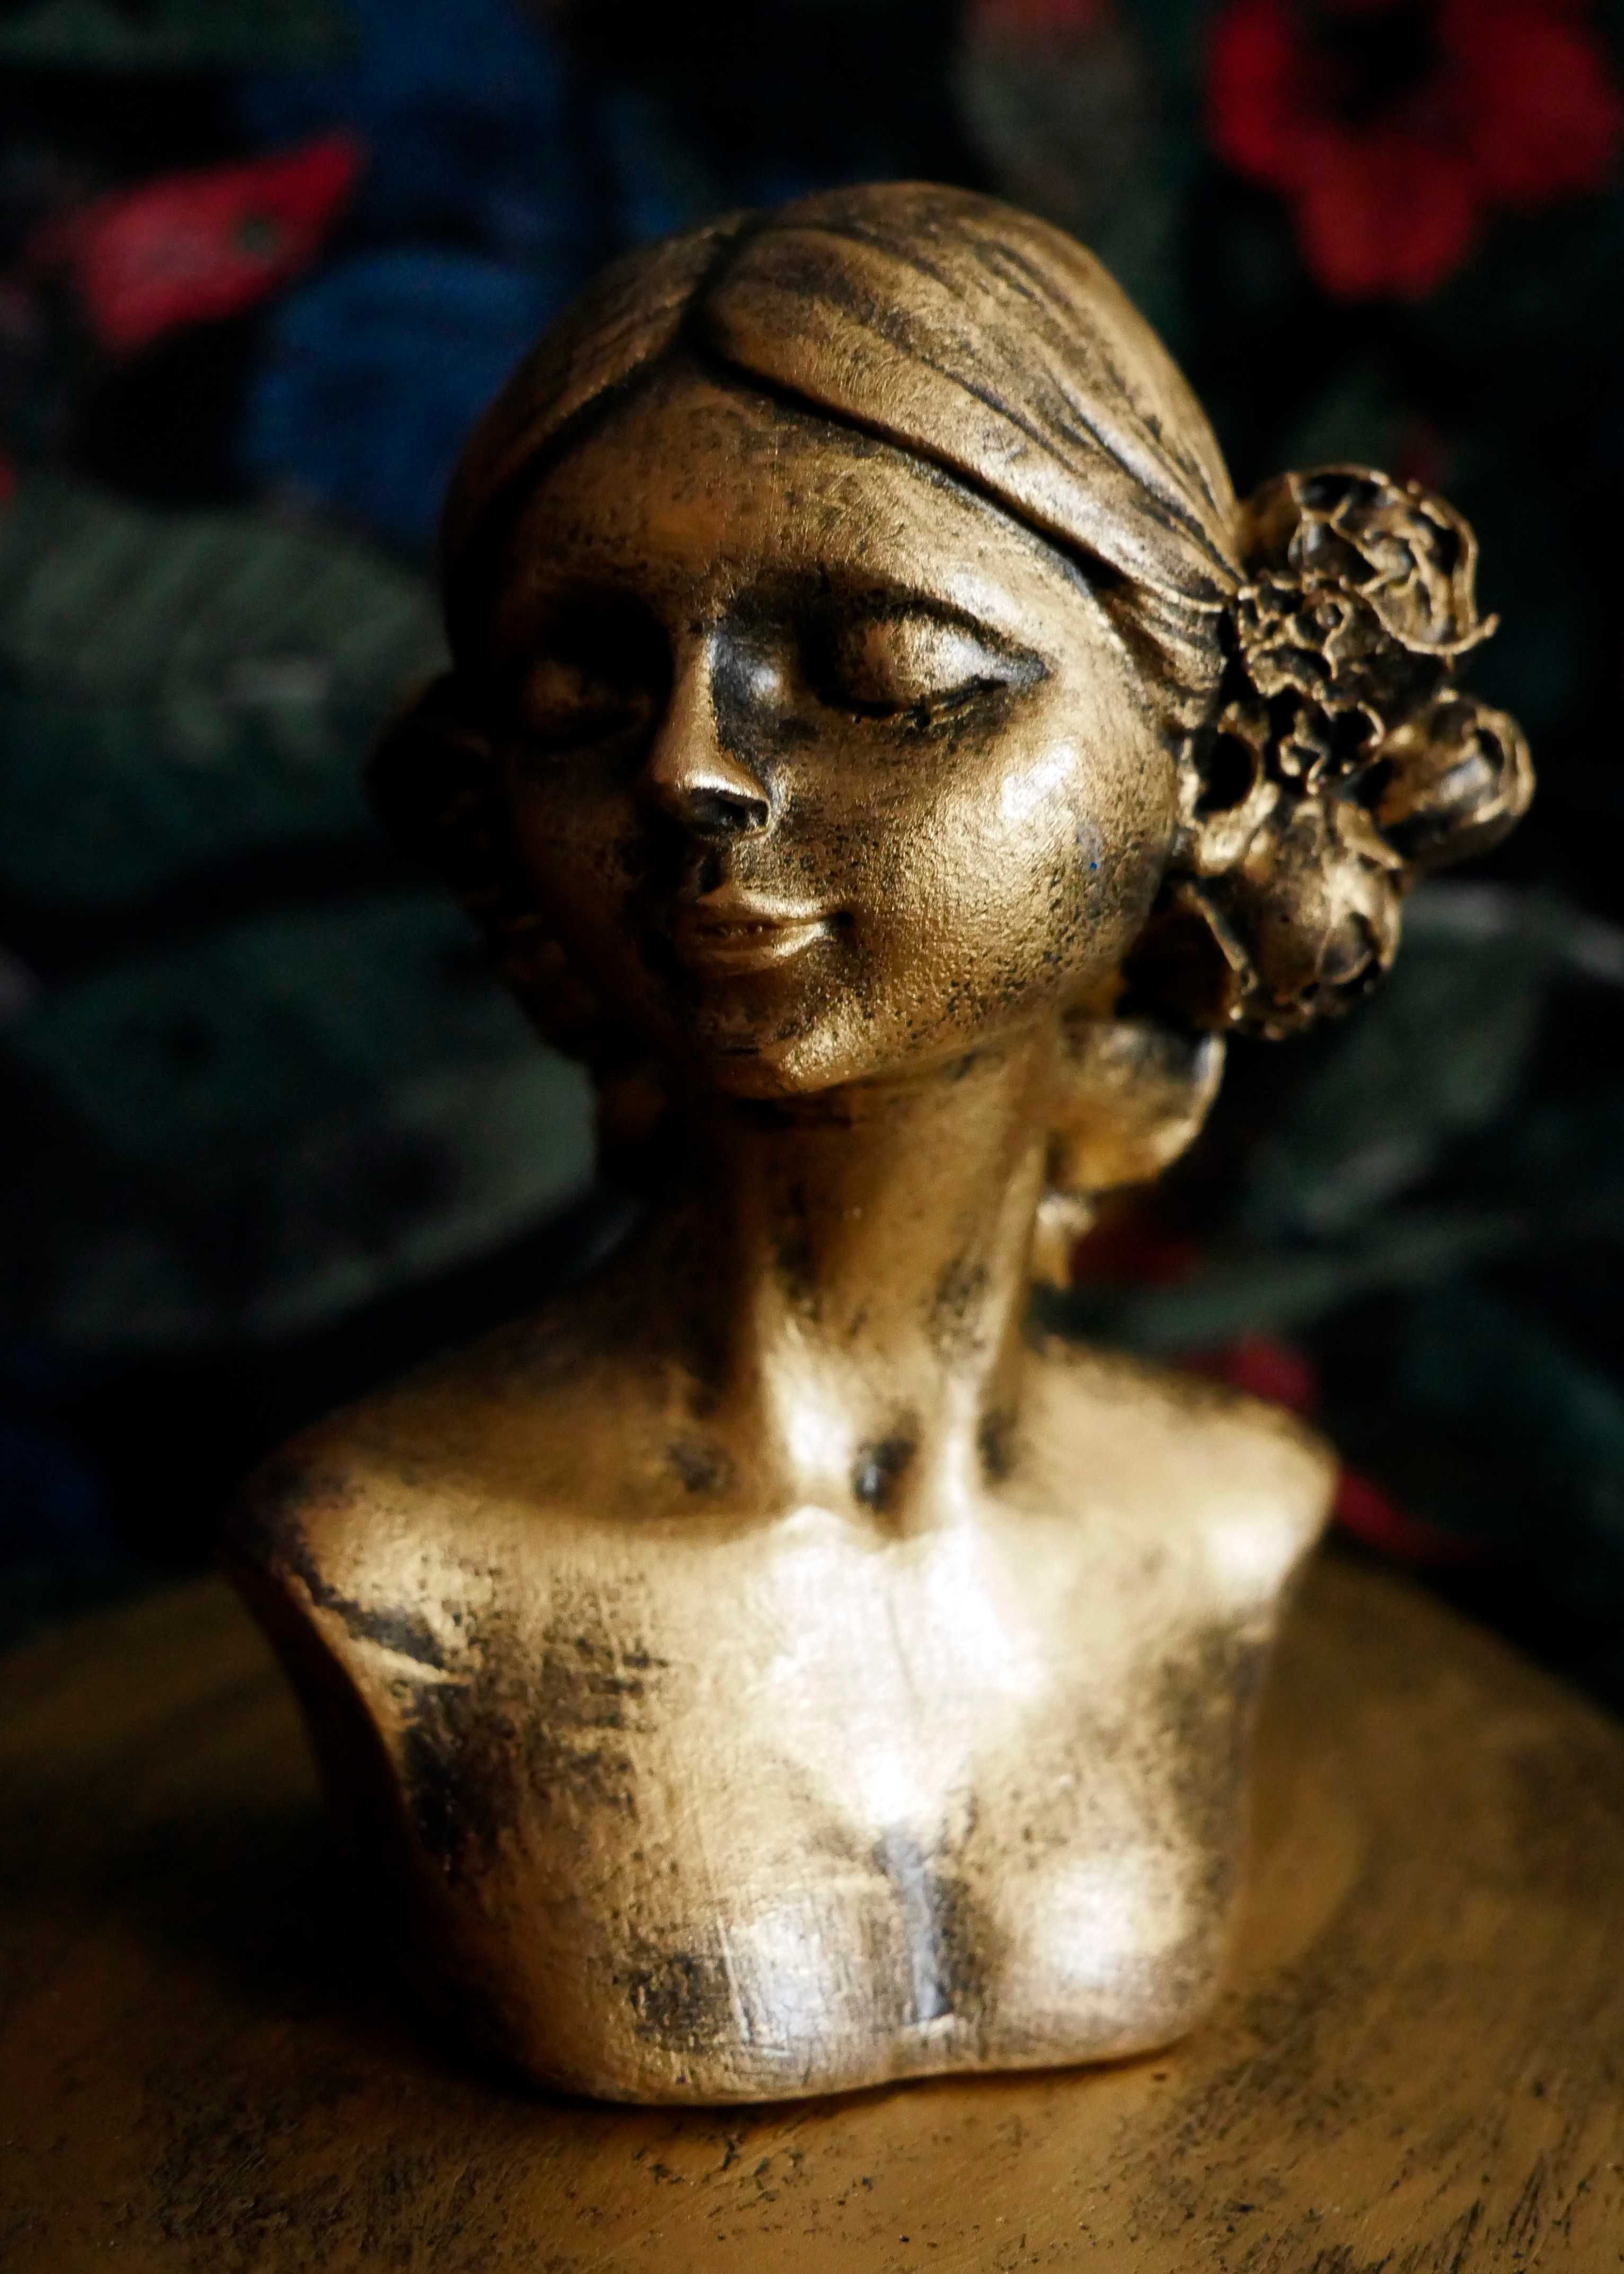 Rzeźba z gipsu złota kobieta z podstawką, wys.10 cm